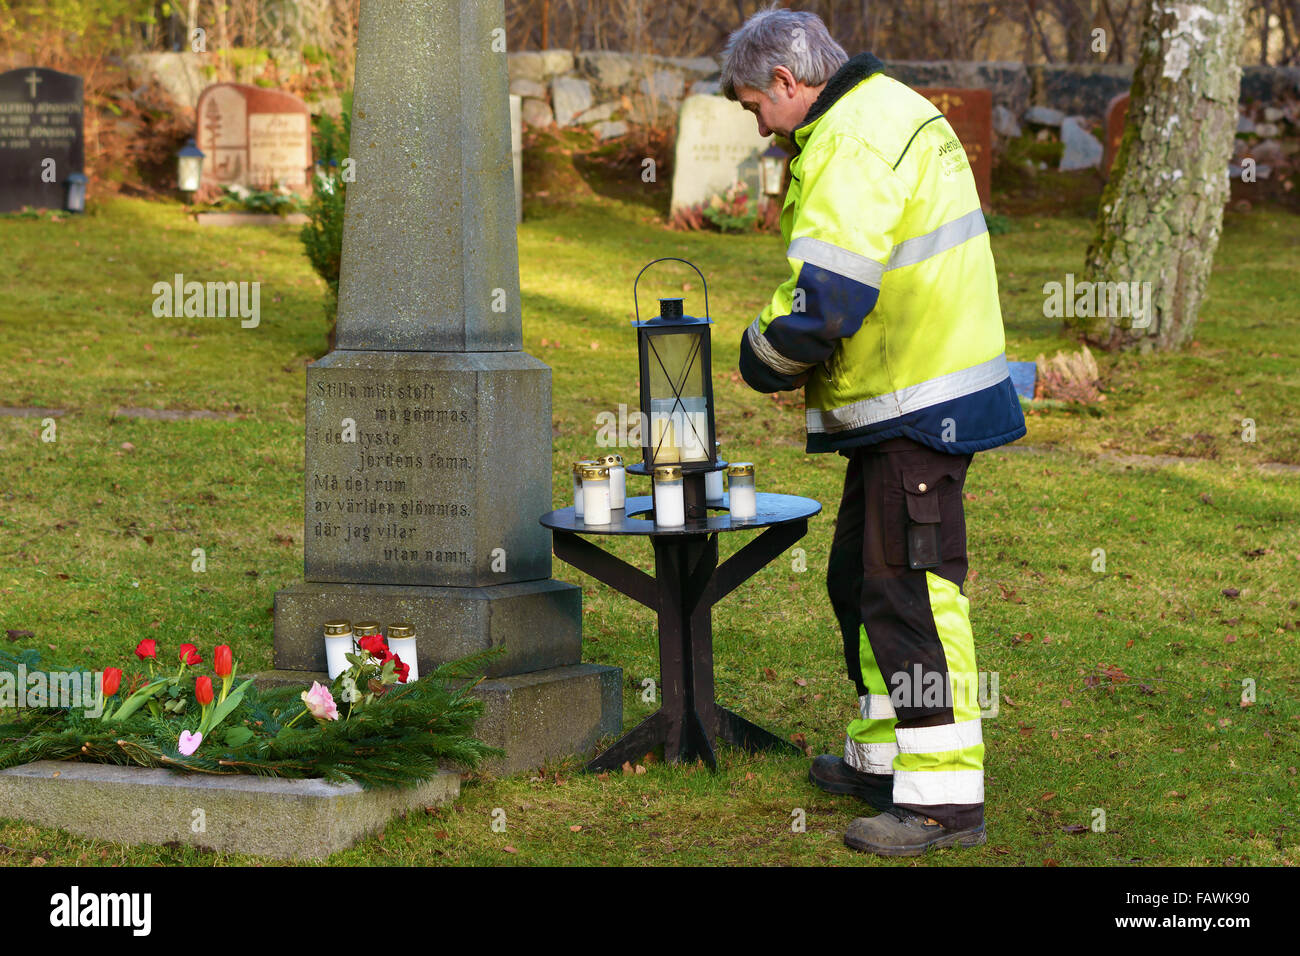 Ronneby, Svezia - 29 dicembre 2015: Sconosciuto cimitero maschio lavoratore in piedi accanto alla lapide commemorativa di persone senza nome. Sm Foto Stock